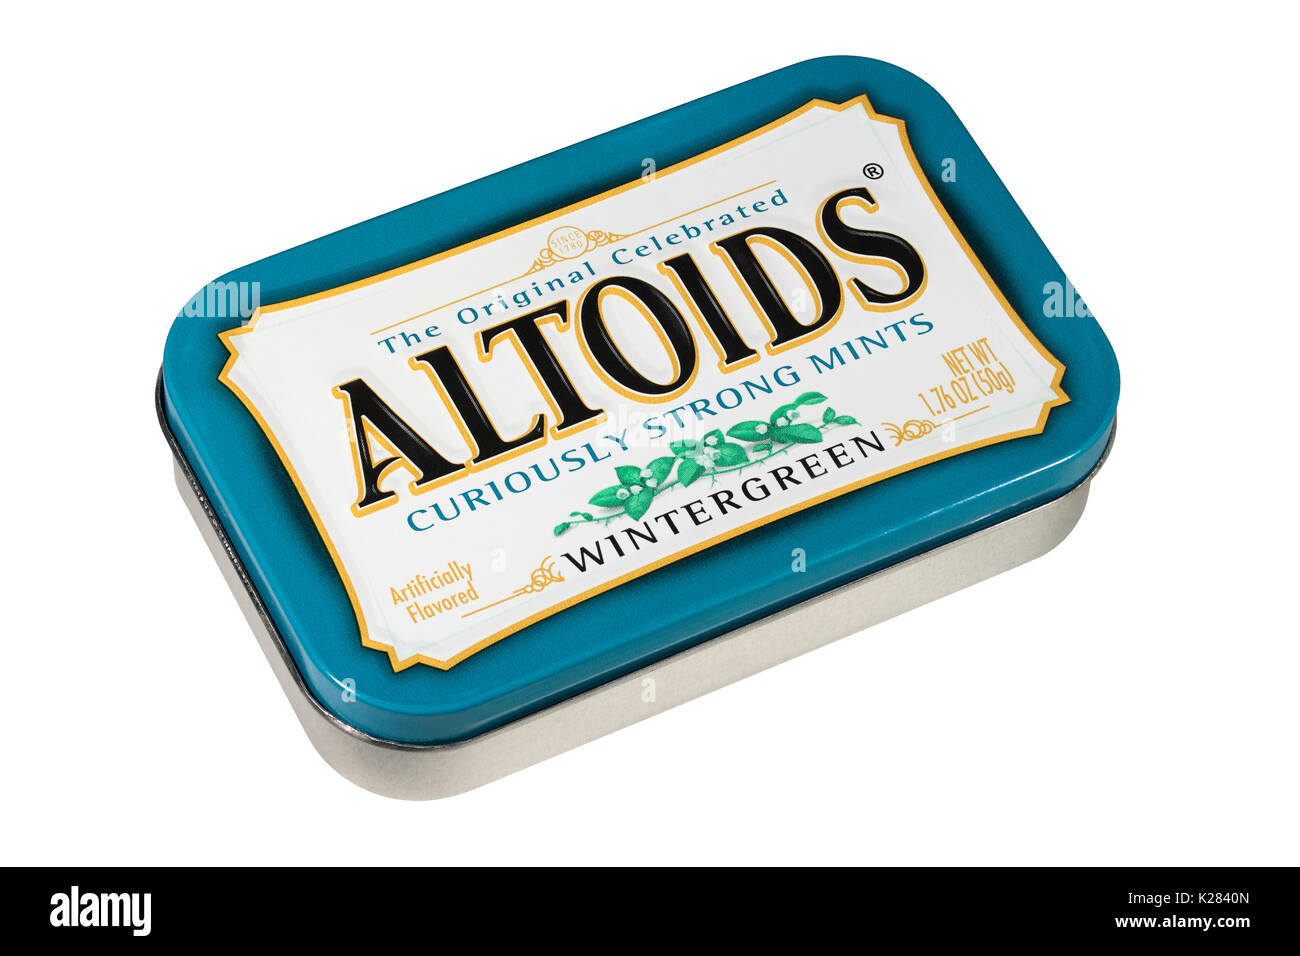 Eine Dose Altoids Wintergreen neugierig Strong Mints auf weißem Hintergrund Stockfoto